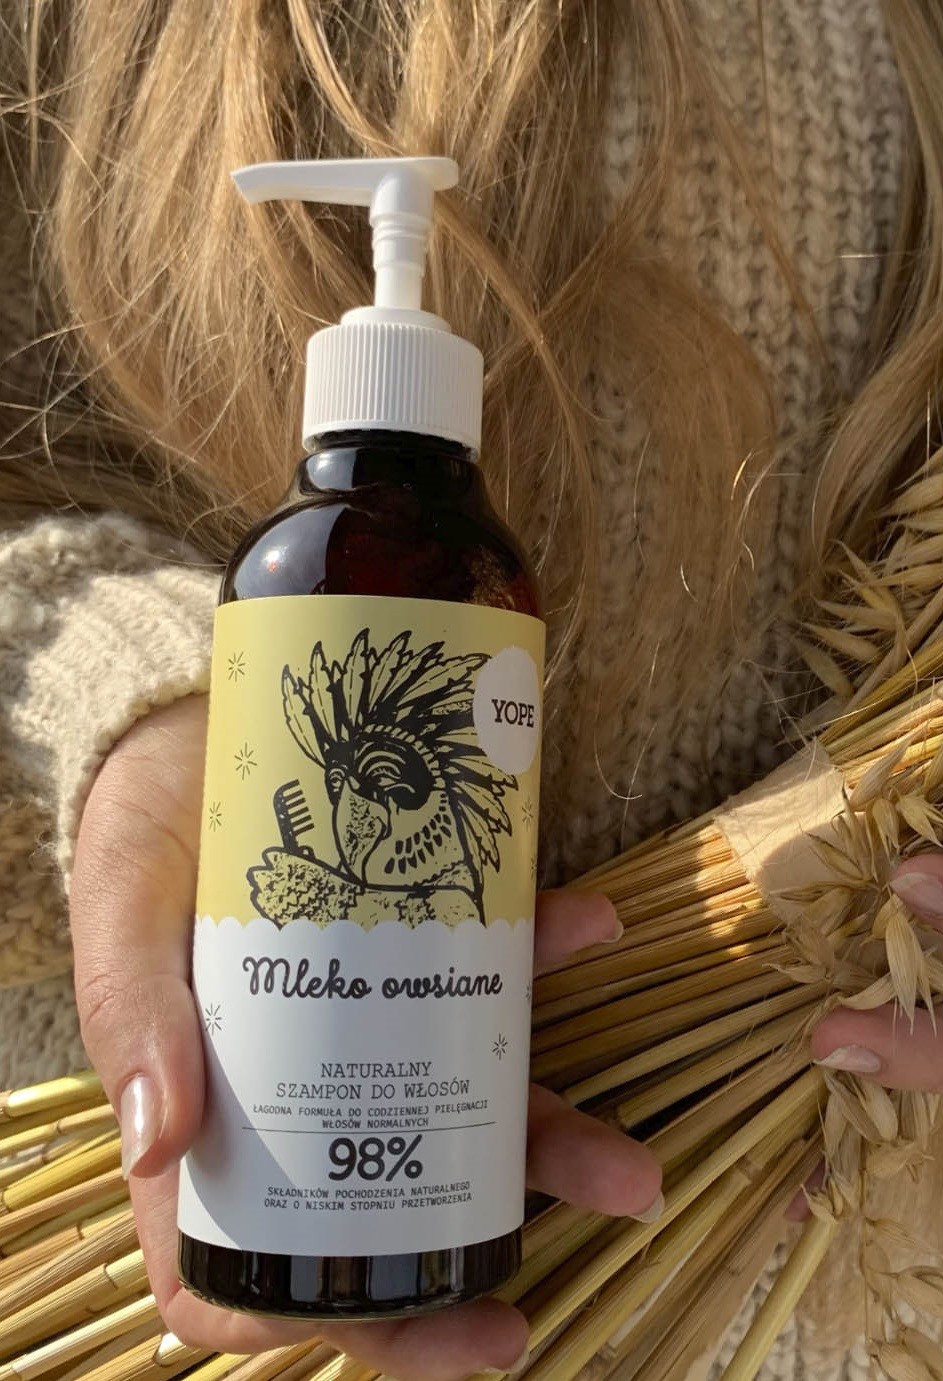 eco cosmetics szampon pielęgnacyjny z liściem oliwnym i malwą